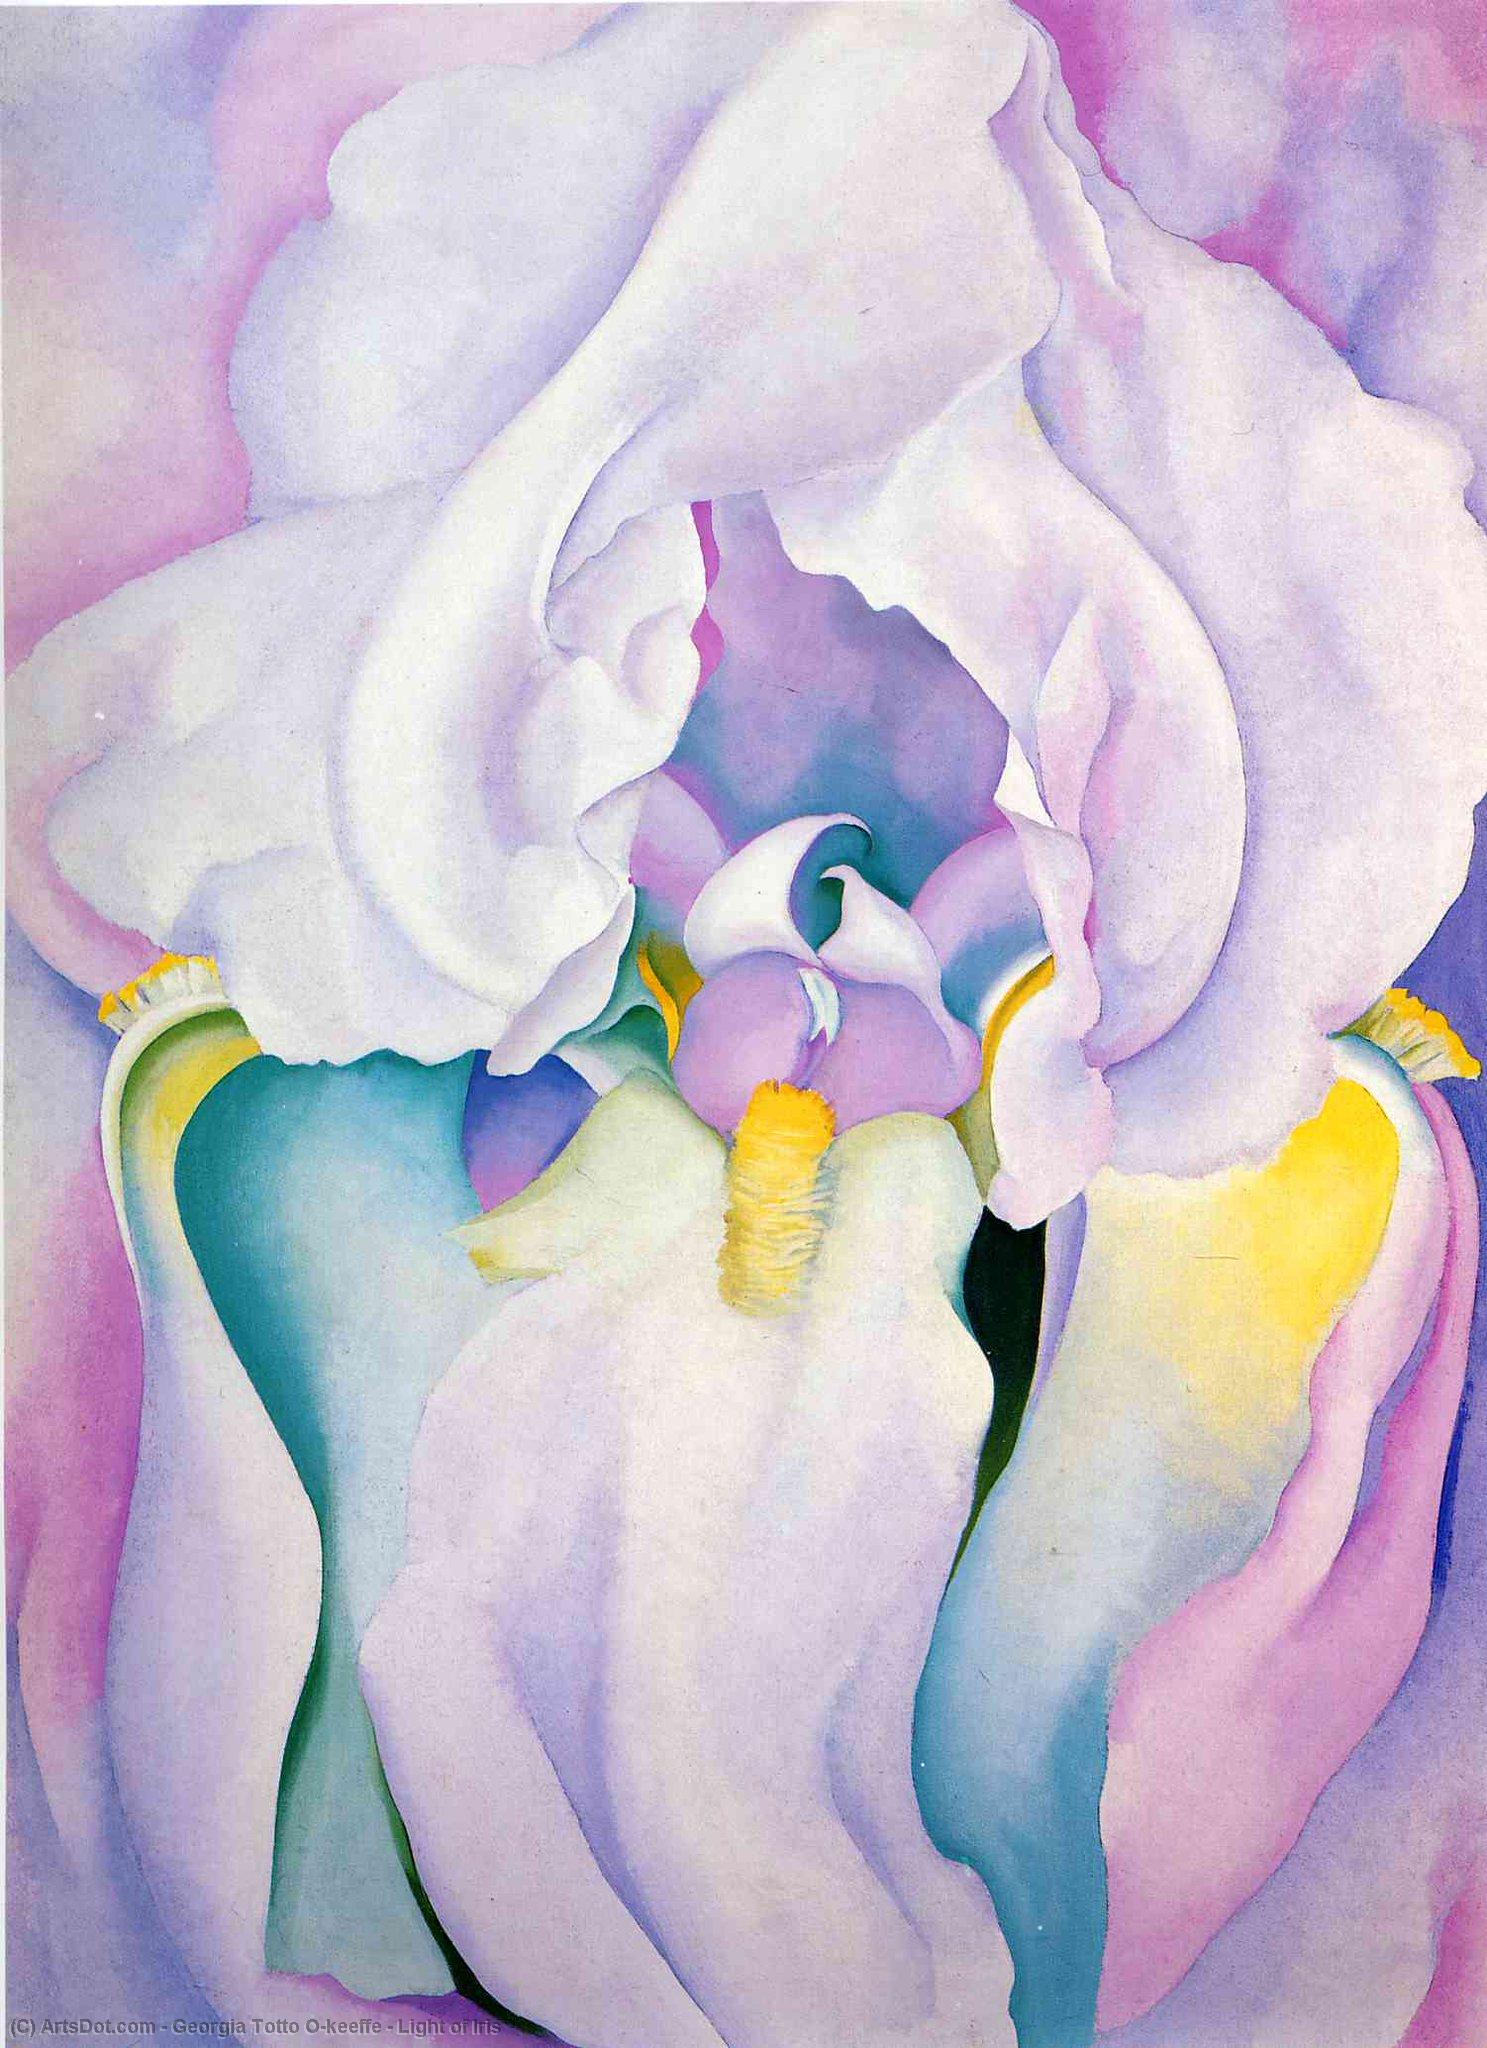 WikiOO.org - Enciklopedija dailės - Tapyba, meno kuriniai Georgia Totto O'keeffe - Light of Iris